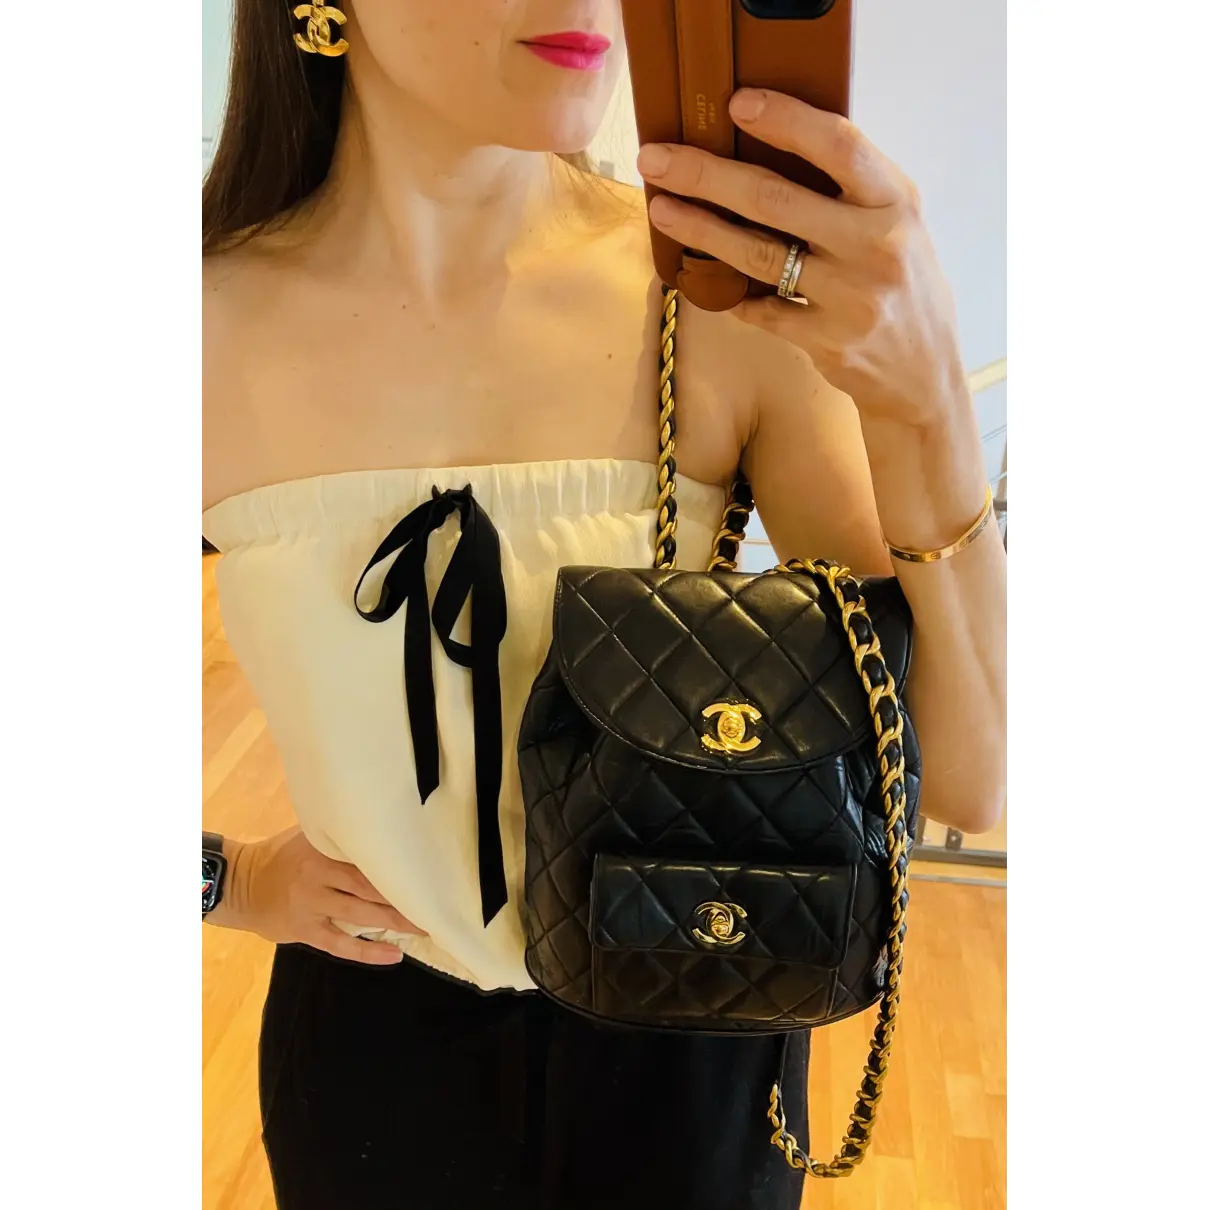 Duma leather backpack Chanel - Vintage